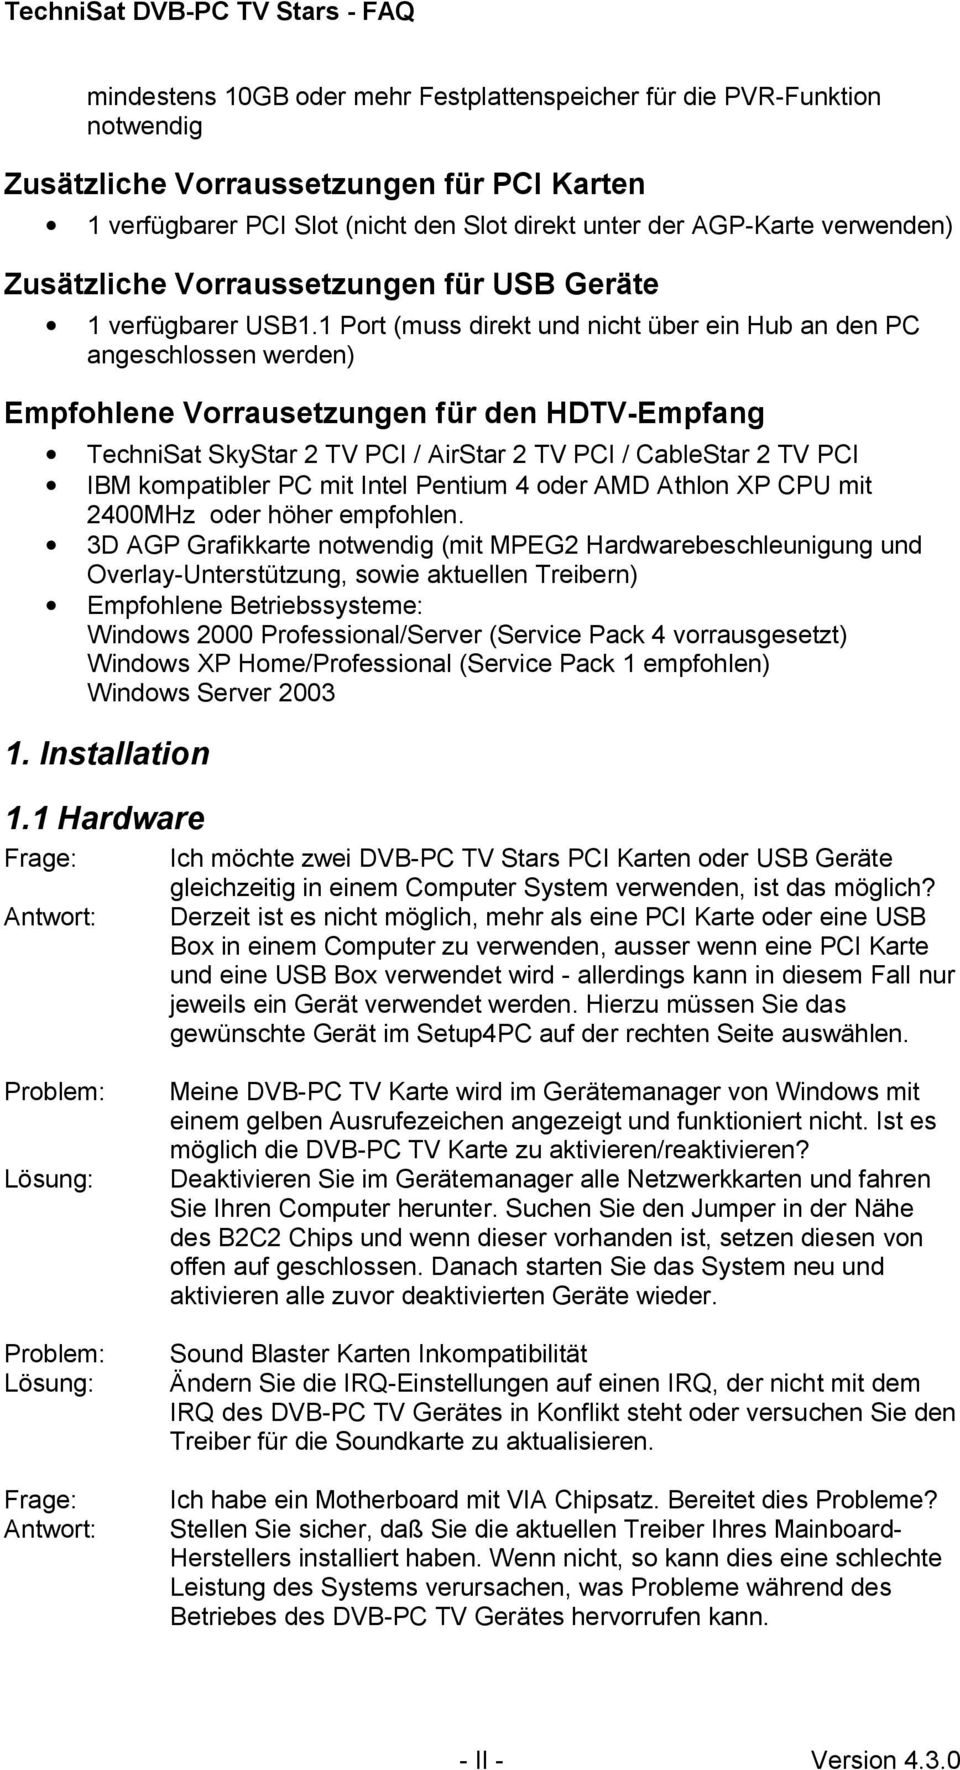 1 Port (muss direkt und nicht über ein Hub an den PC angeschlossen werden) Empfohlene Vorrausetzungen für den HDTV-Empfang TechniSat SkyStar 2 TV PCI / AirStar 2 TV PCI / CableStar 2 TV PCI IBM